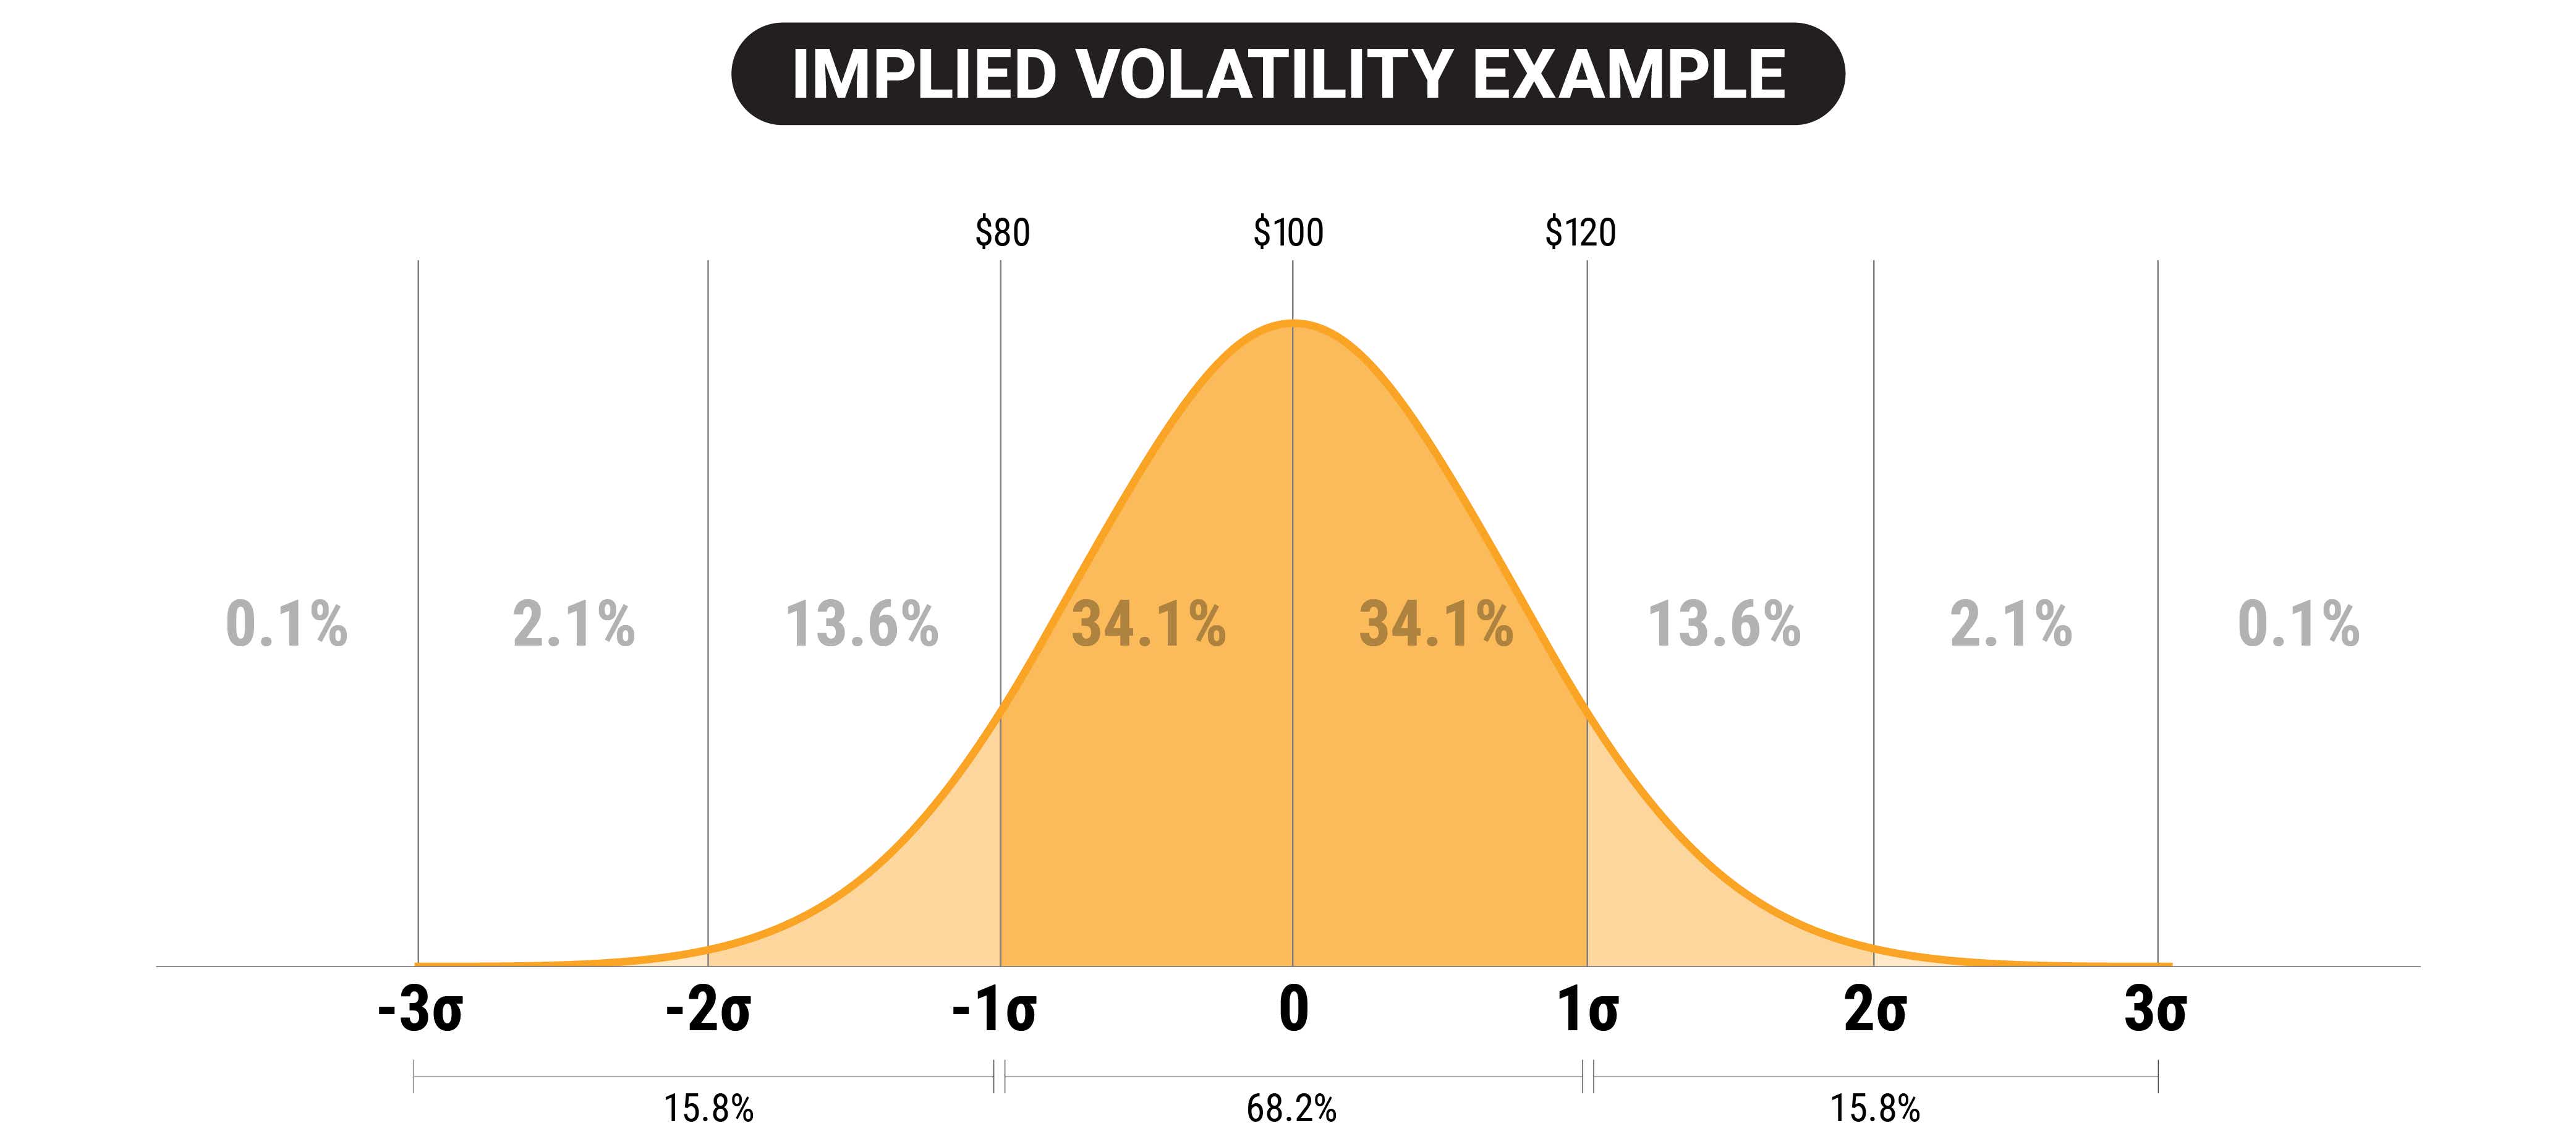 Implied volatility example